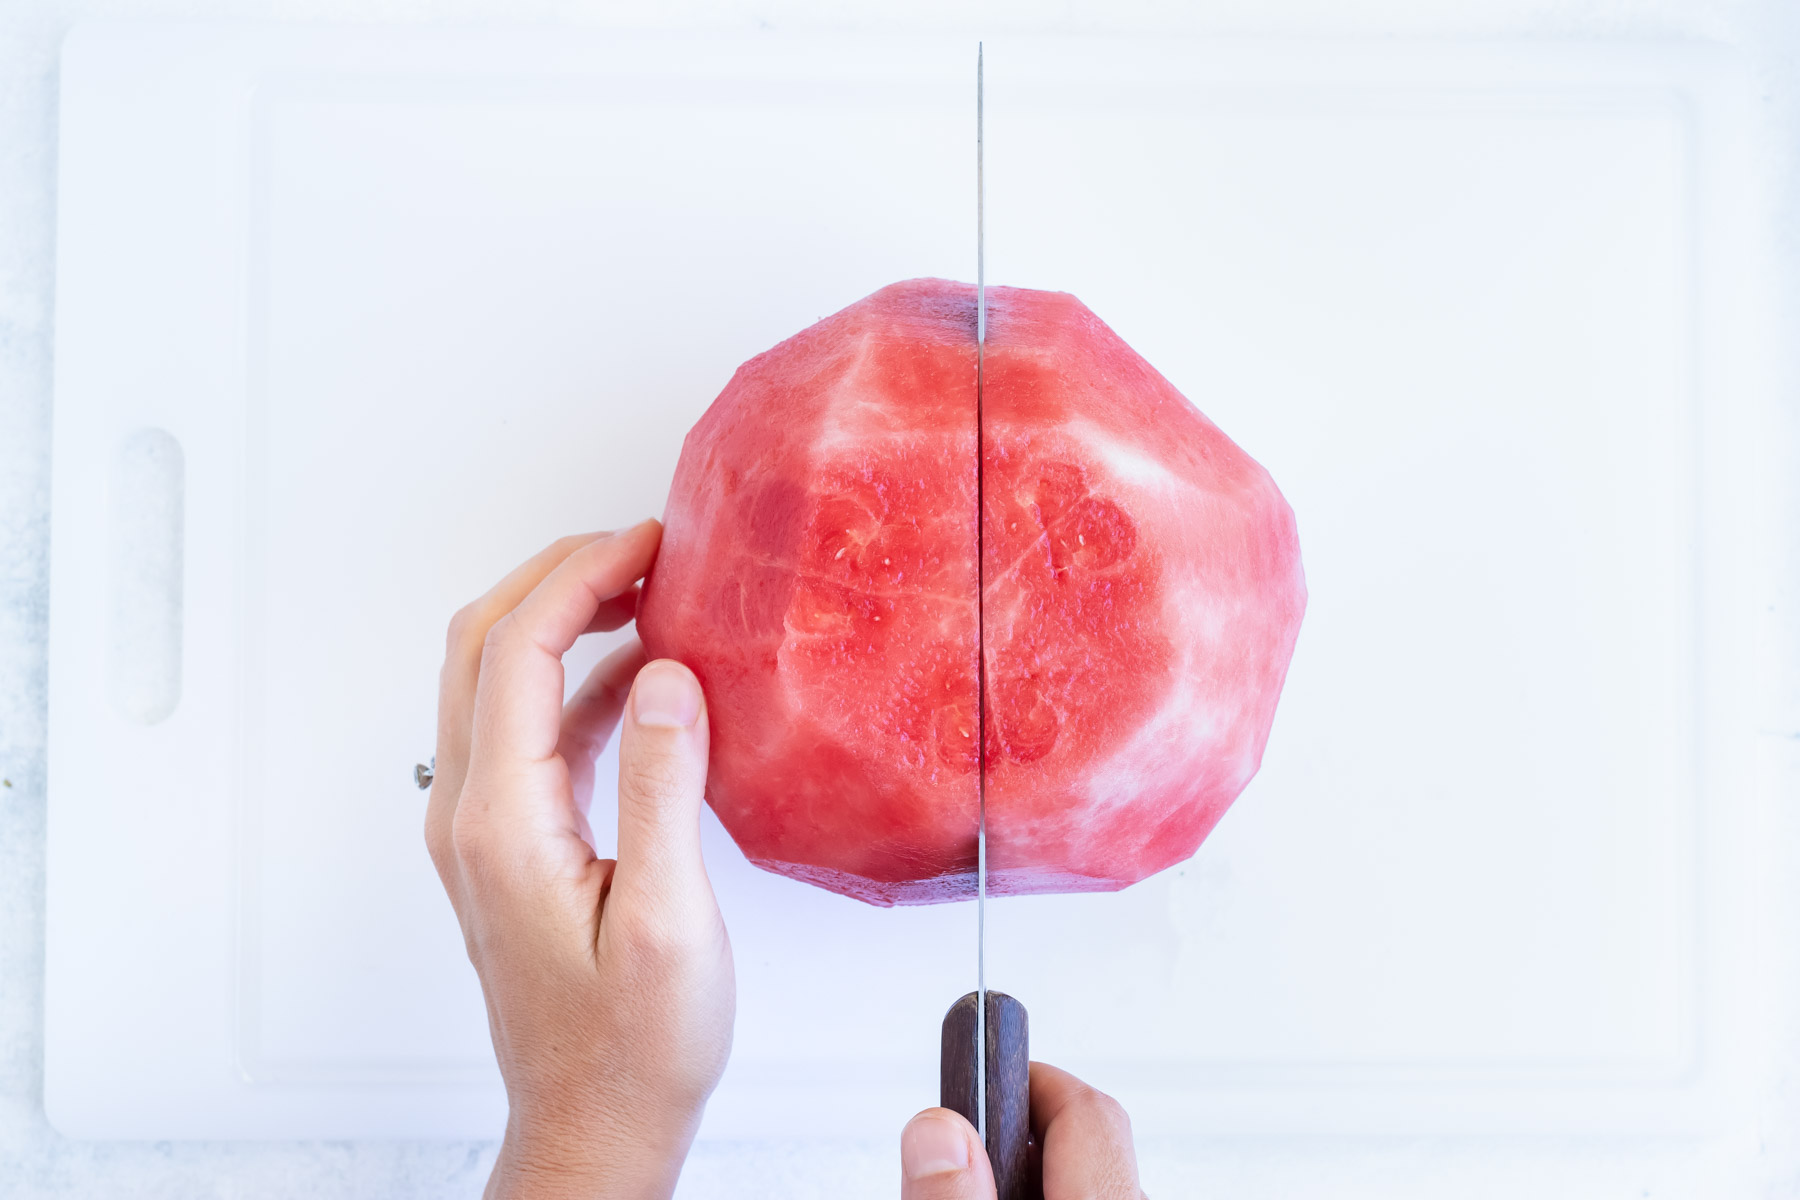 A sharp knife cutting watermelon flesh in half